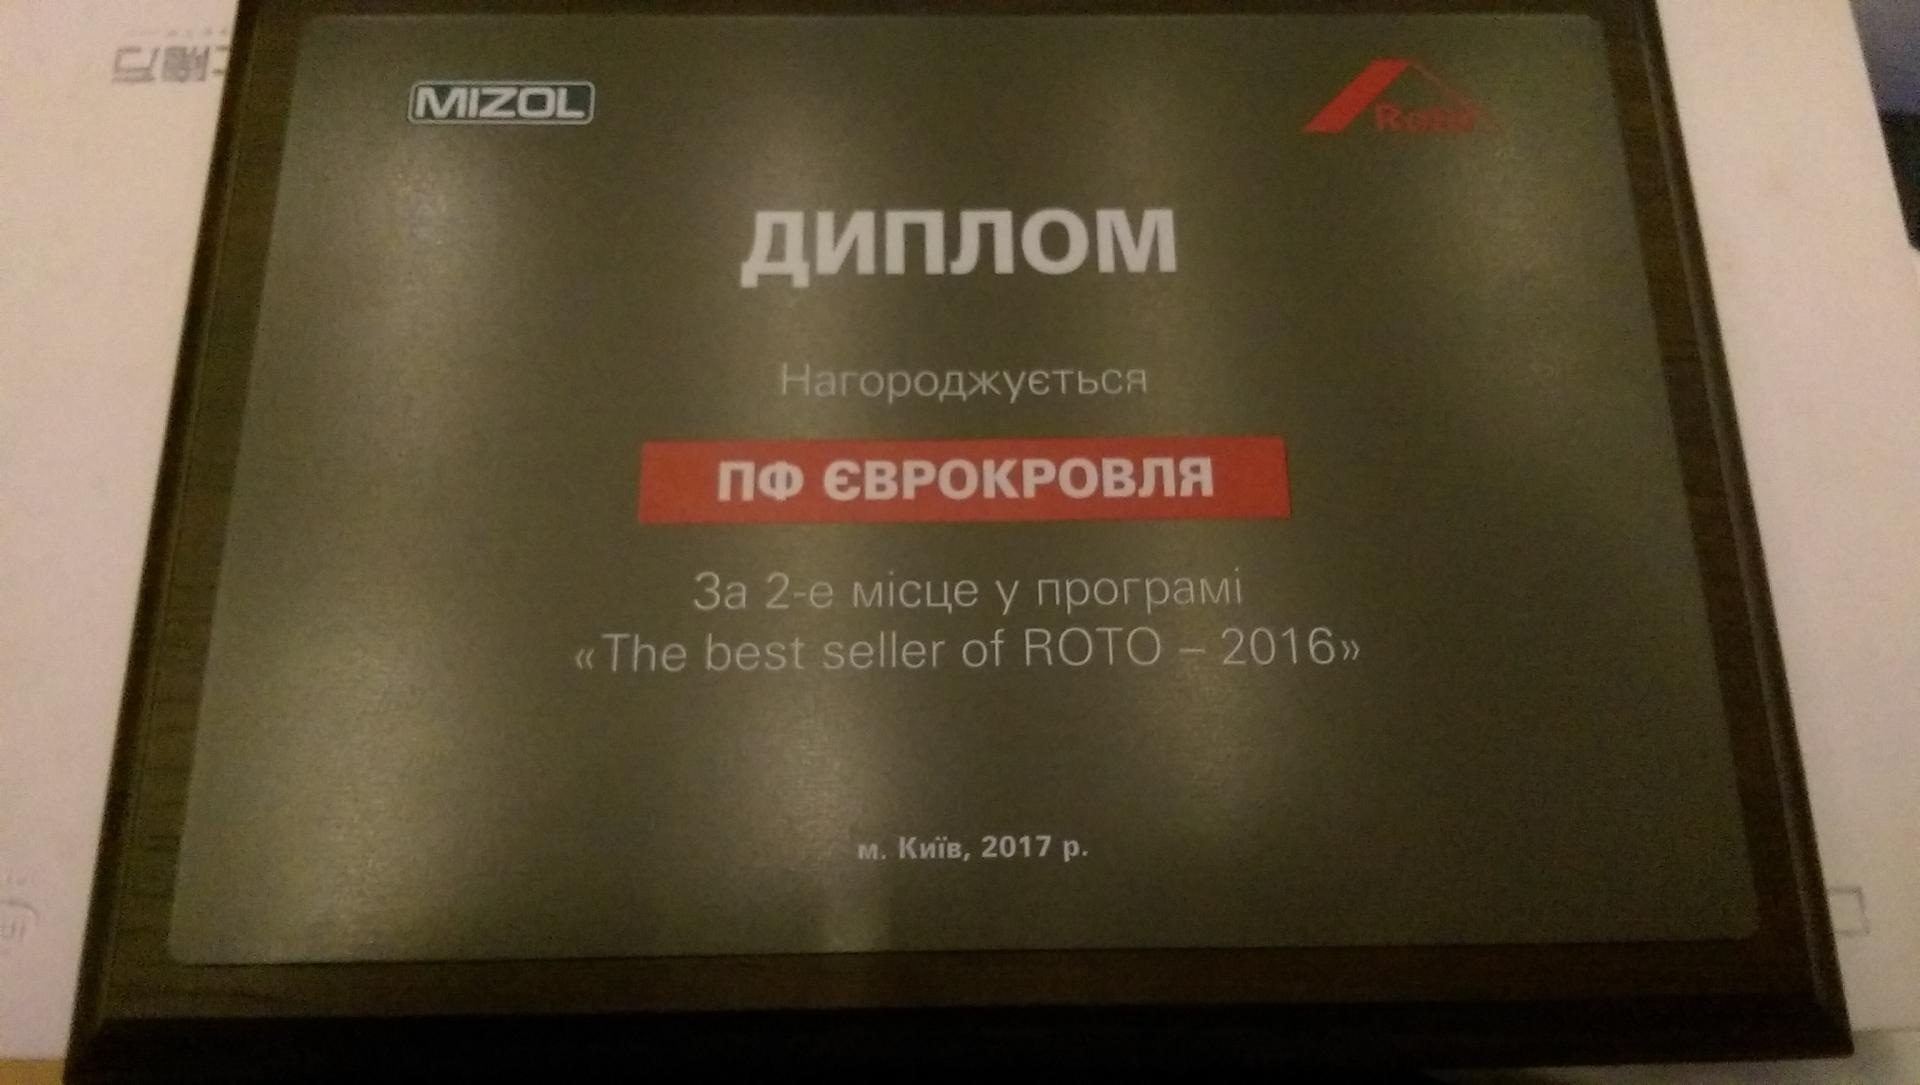 Лучшие продавцы мансардных окон Roto. The best seller of Roto 2016